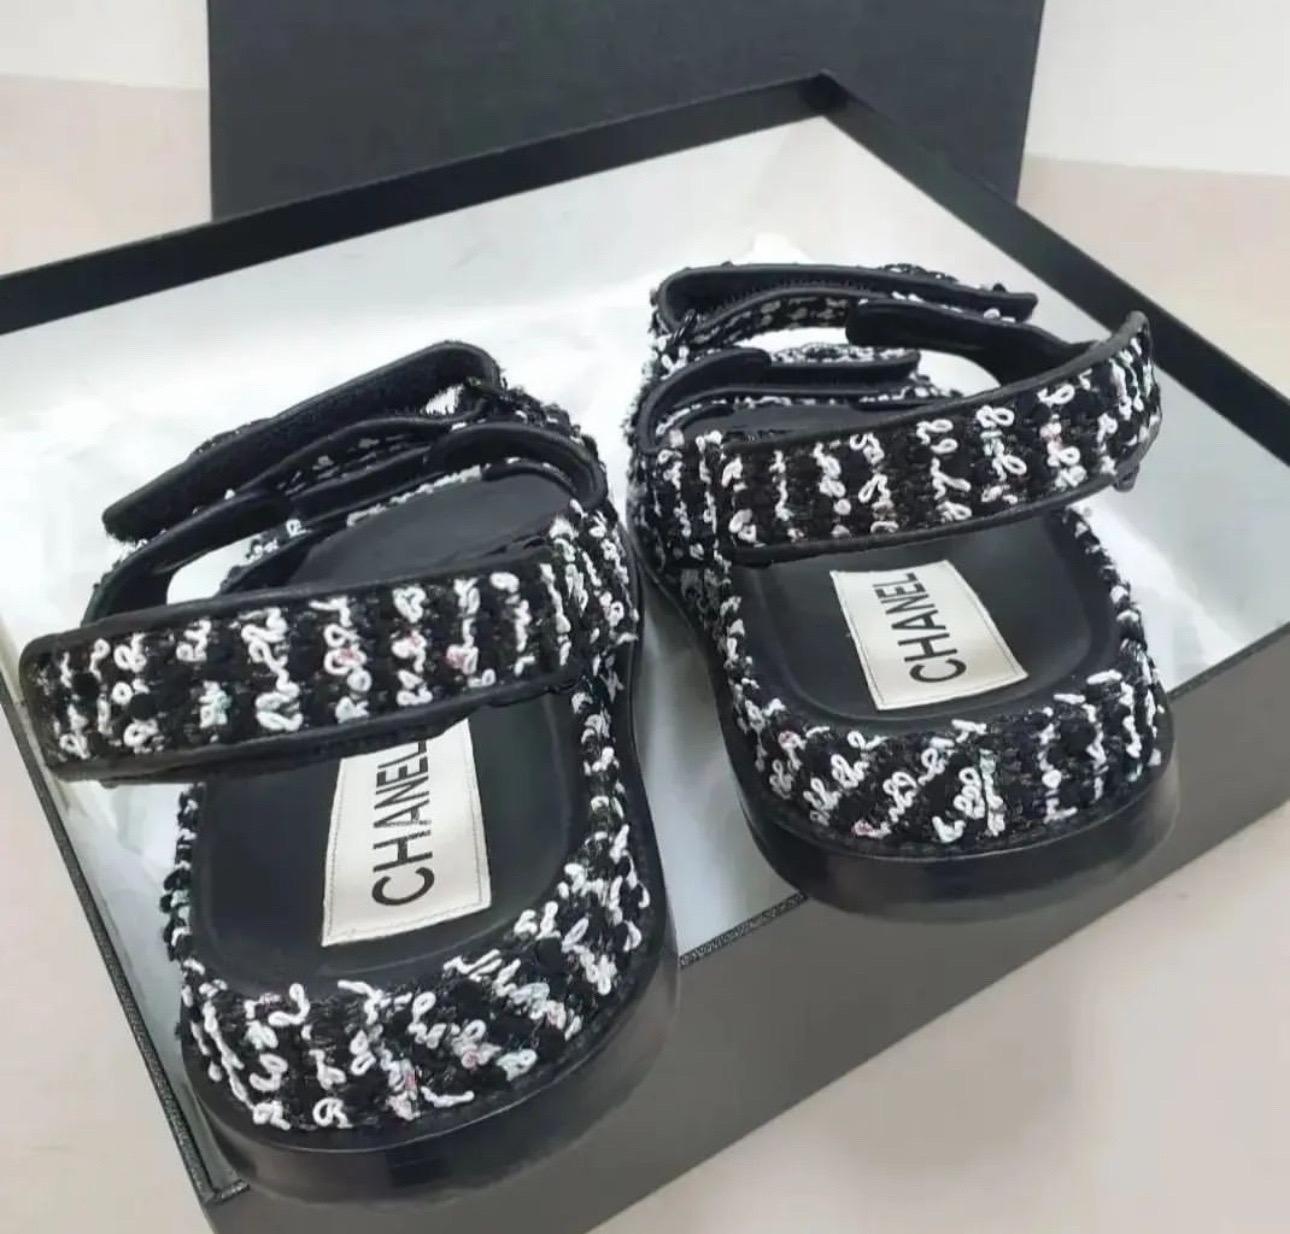 Chanel Sandalen aus schwarzem und weißem Tweed mit kristallverziertem cc-Logo 
Sz.38.5
Keine Box. Kein Staubbeutel